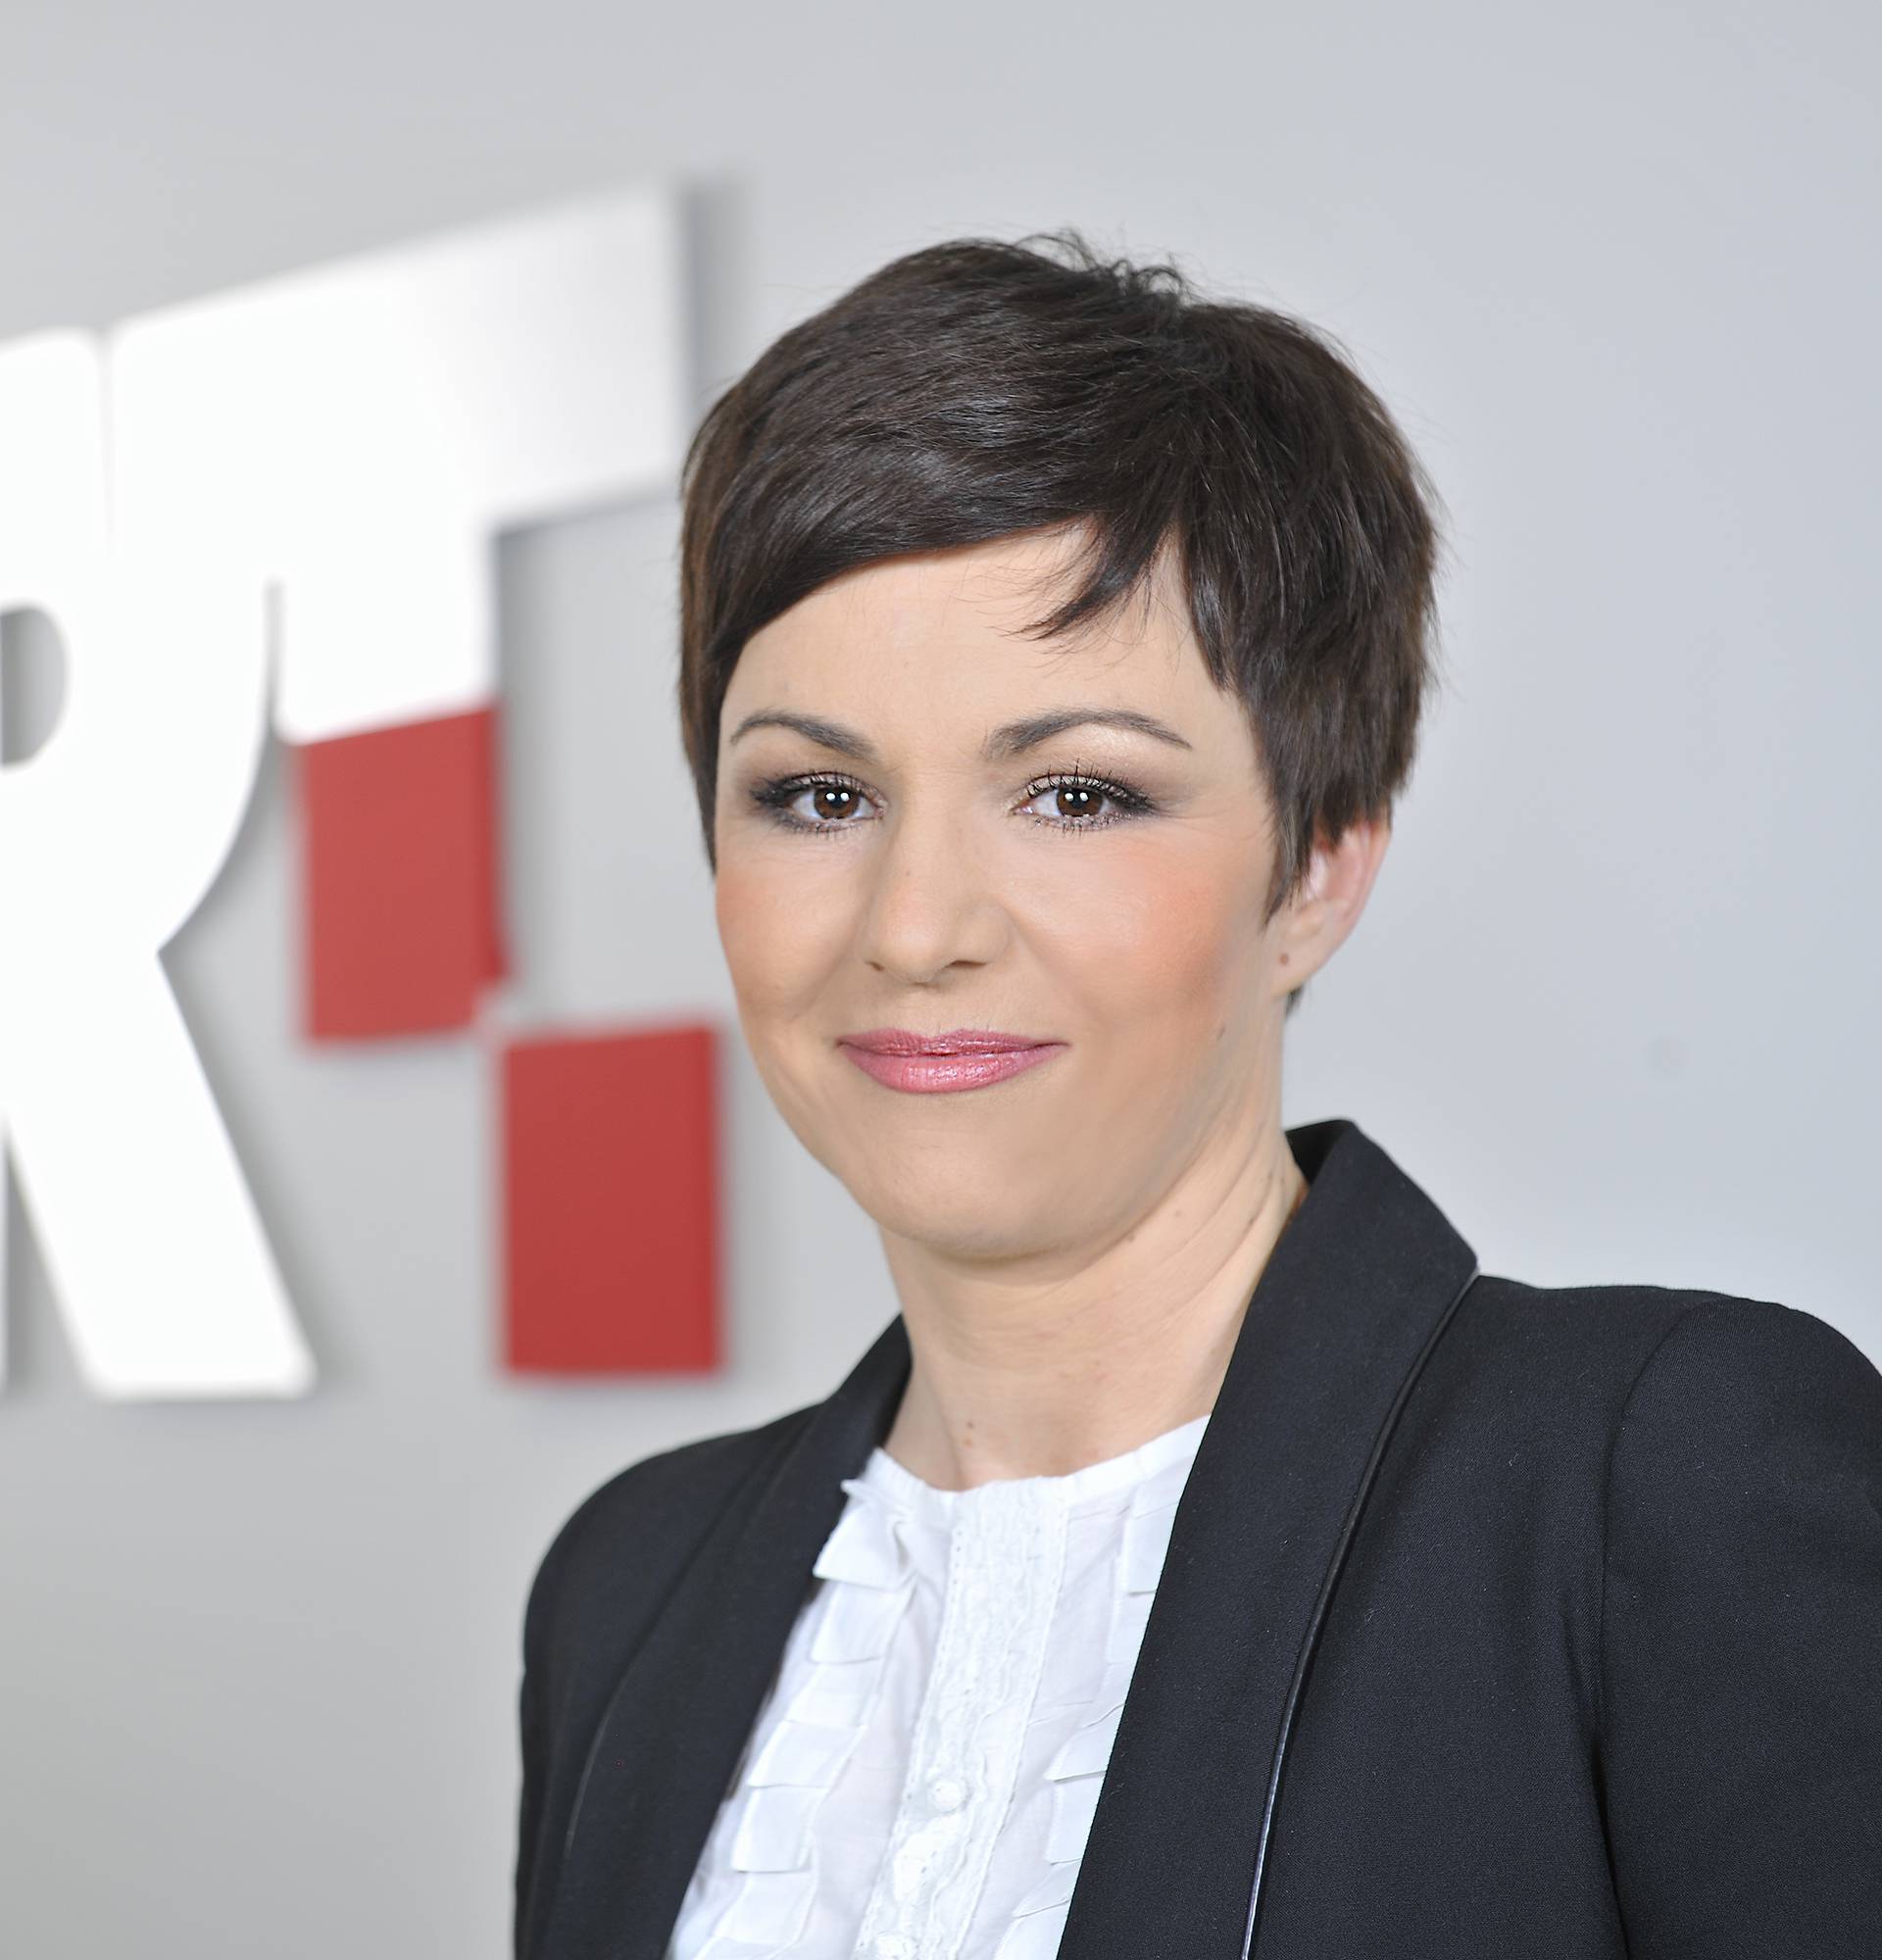 Hrvatska radiotelevizija najgledanija prošloga vikenda